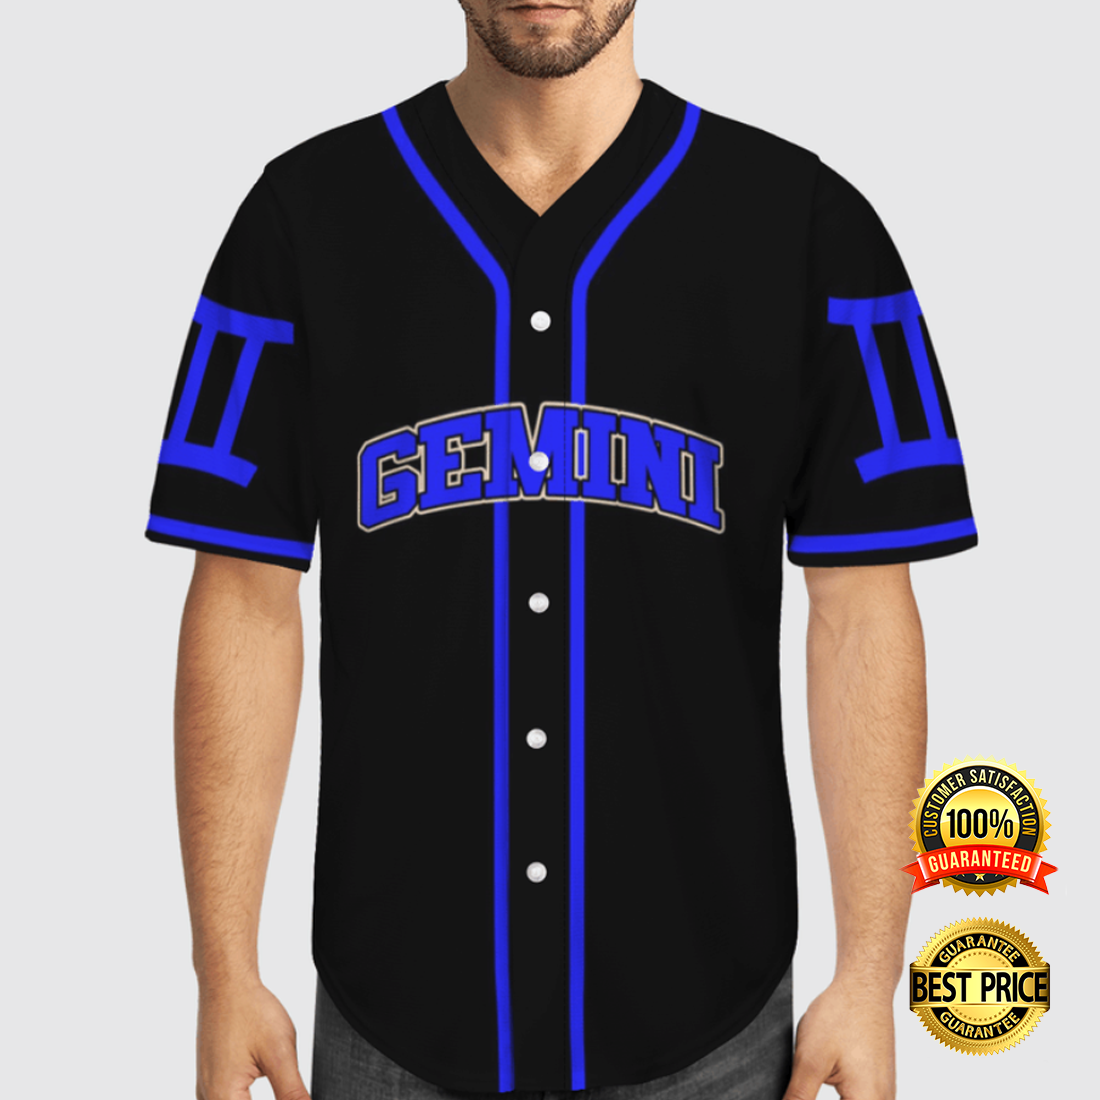 Gemini baseball jersey